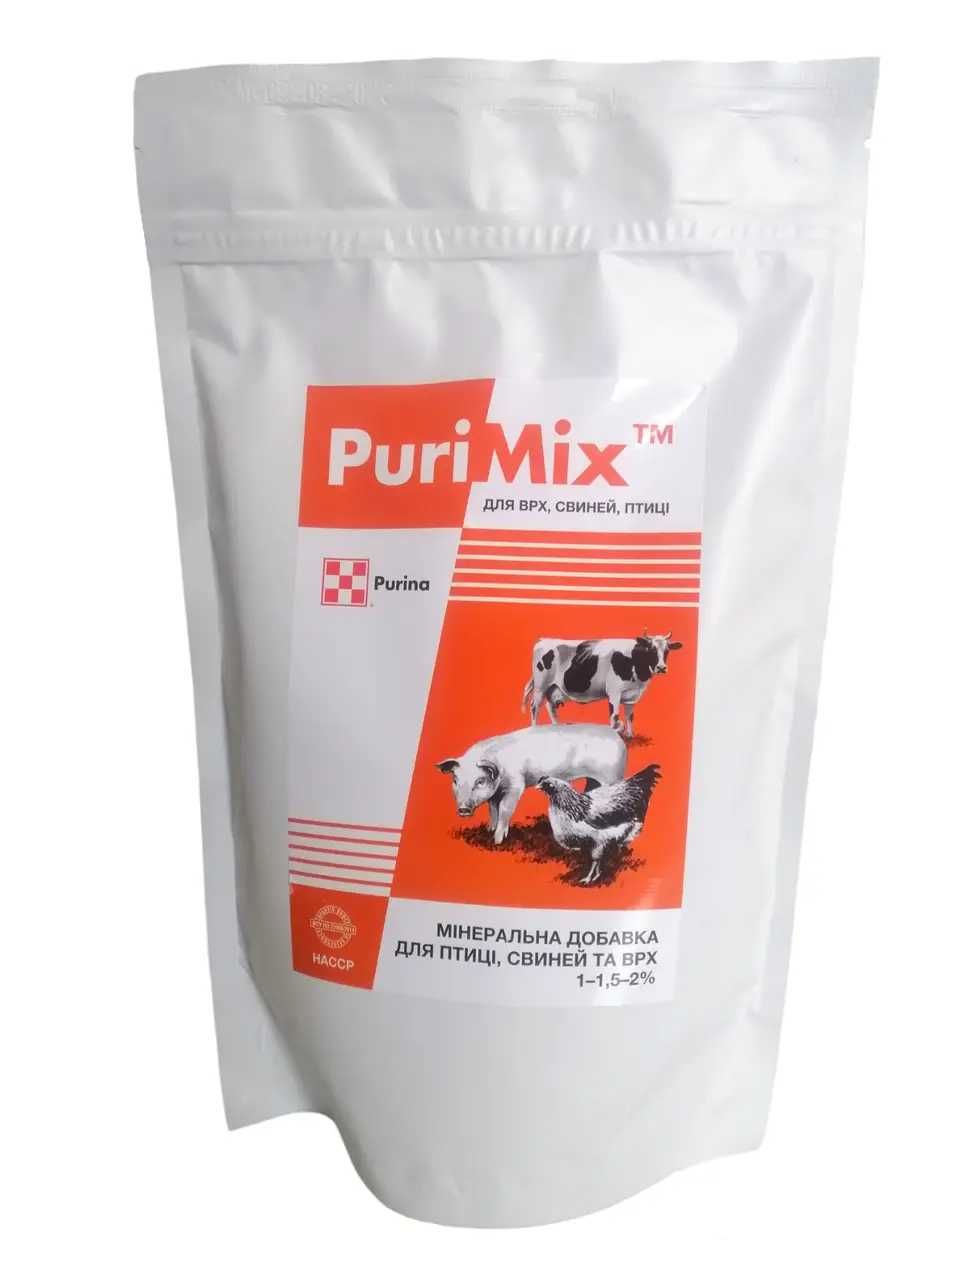 Purimix мінеральна добавка для птиці свиней та ВРХ